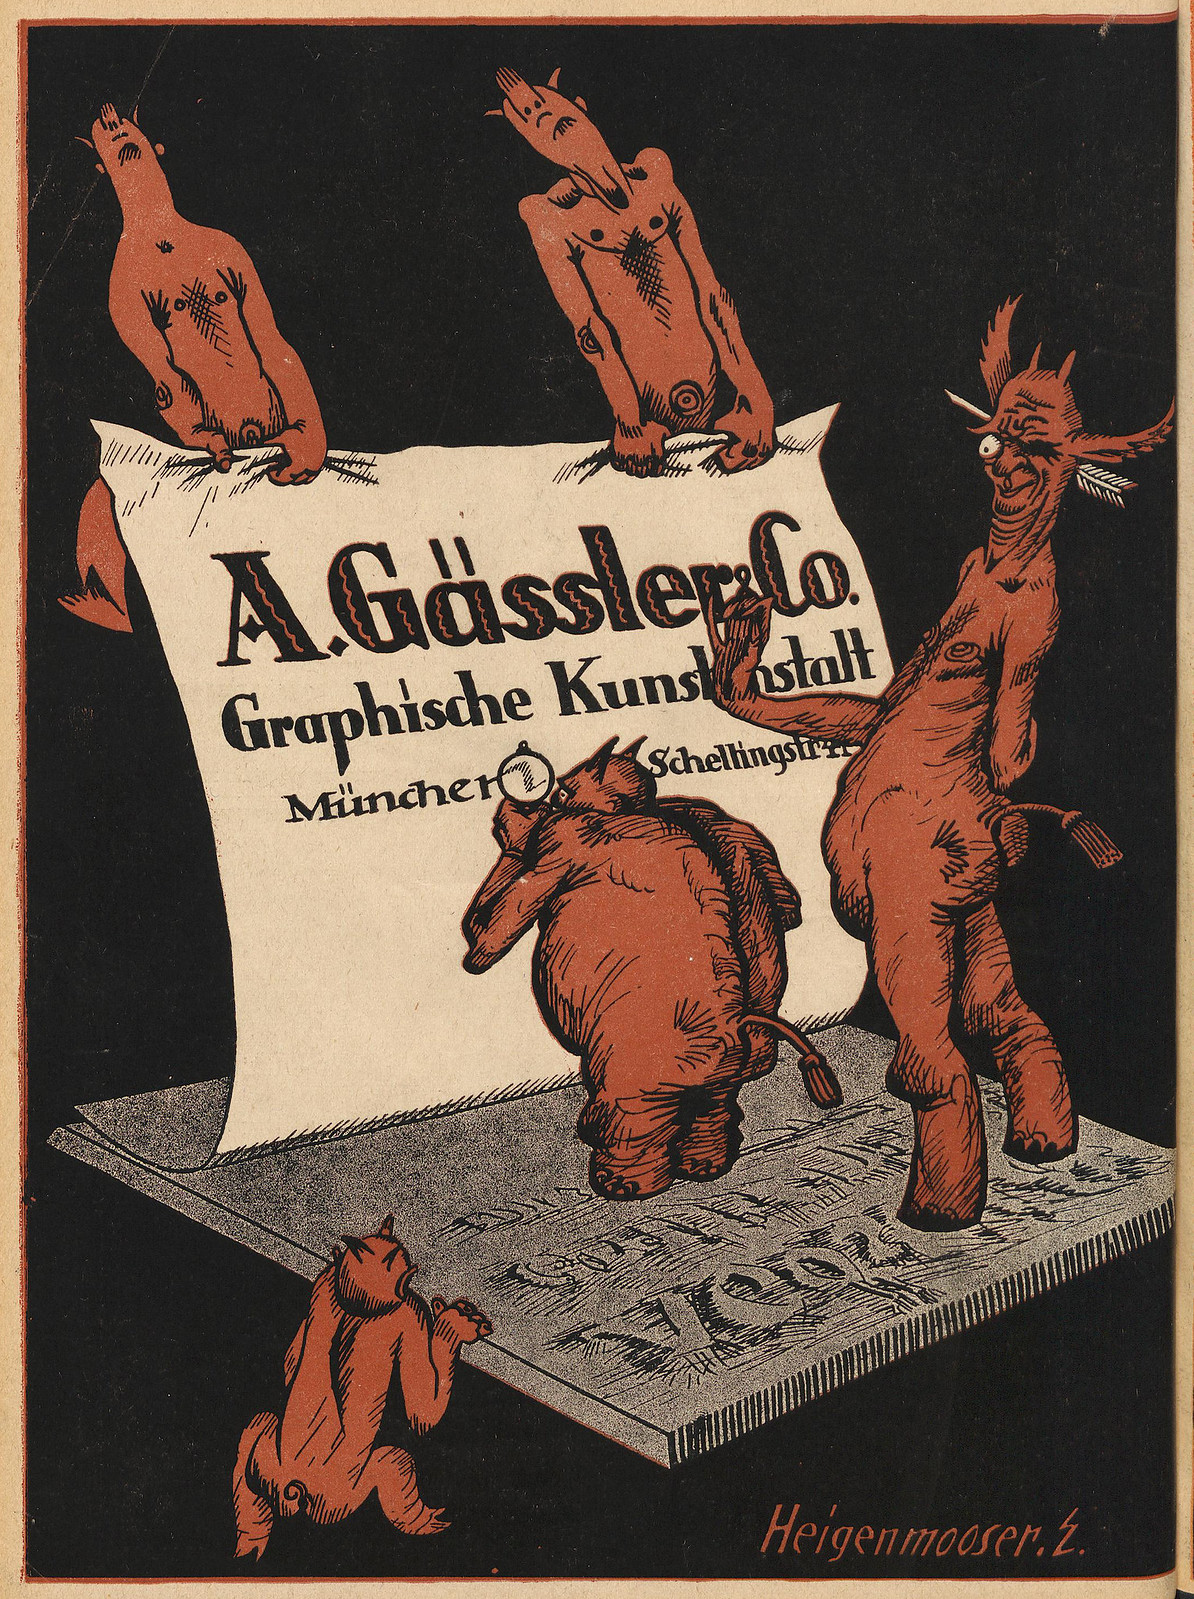 Der Orchideengarten - 1919, Back Cover, Ernst Heigenmooser